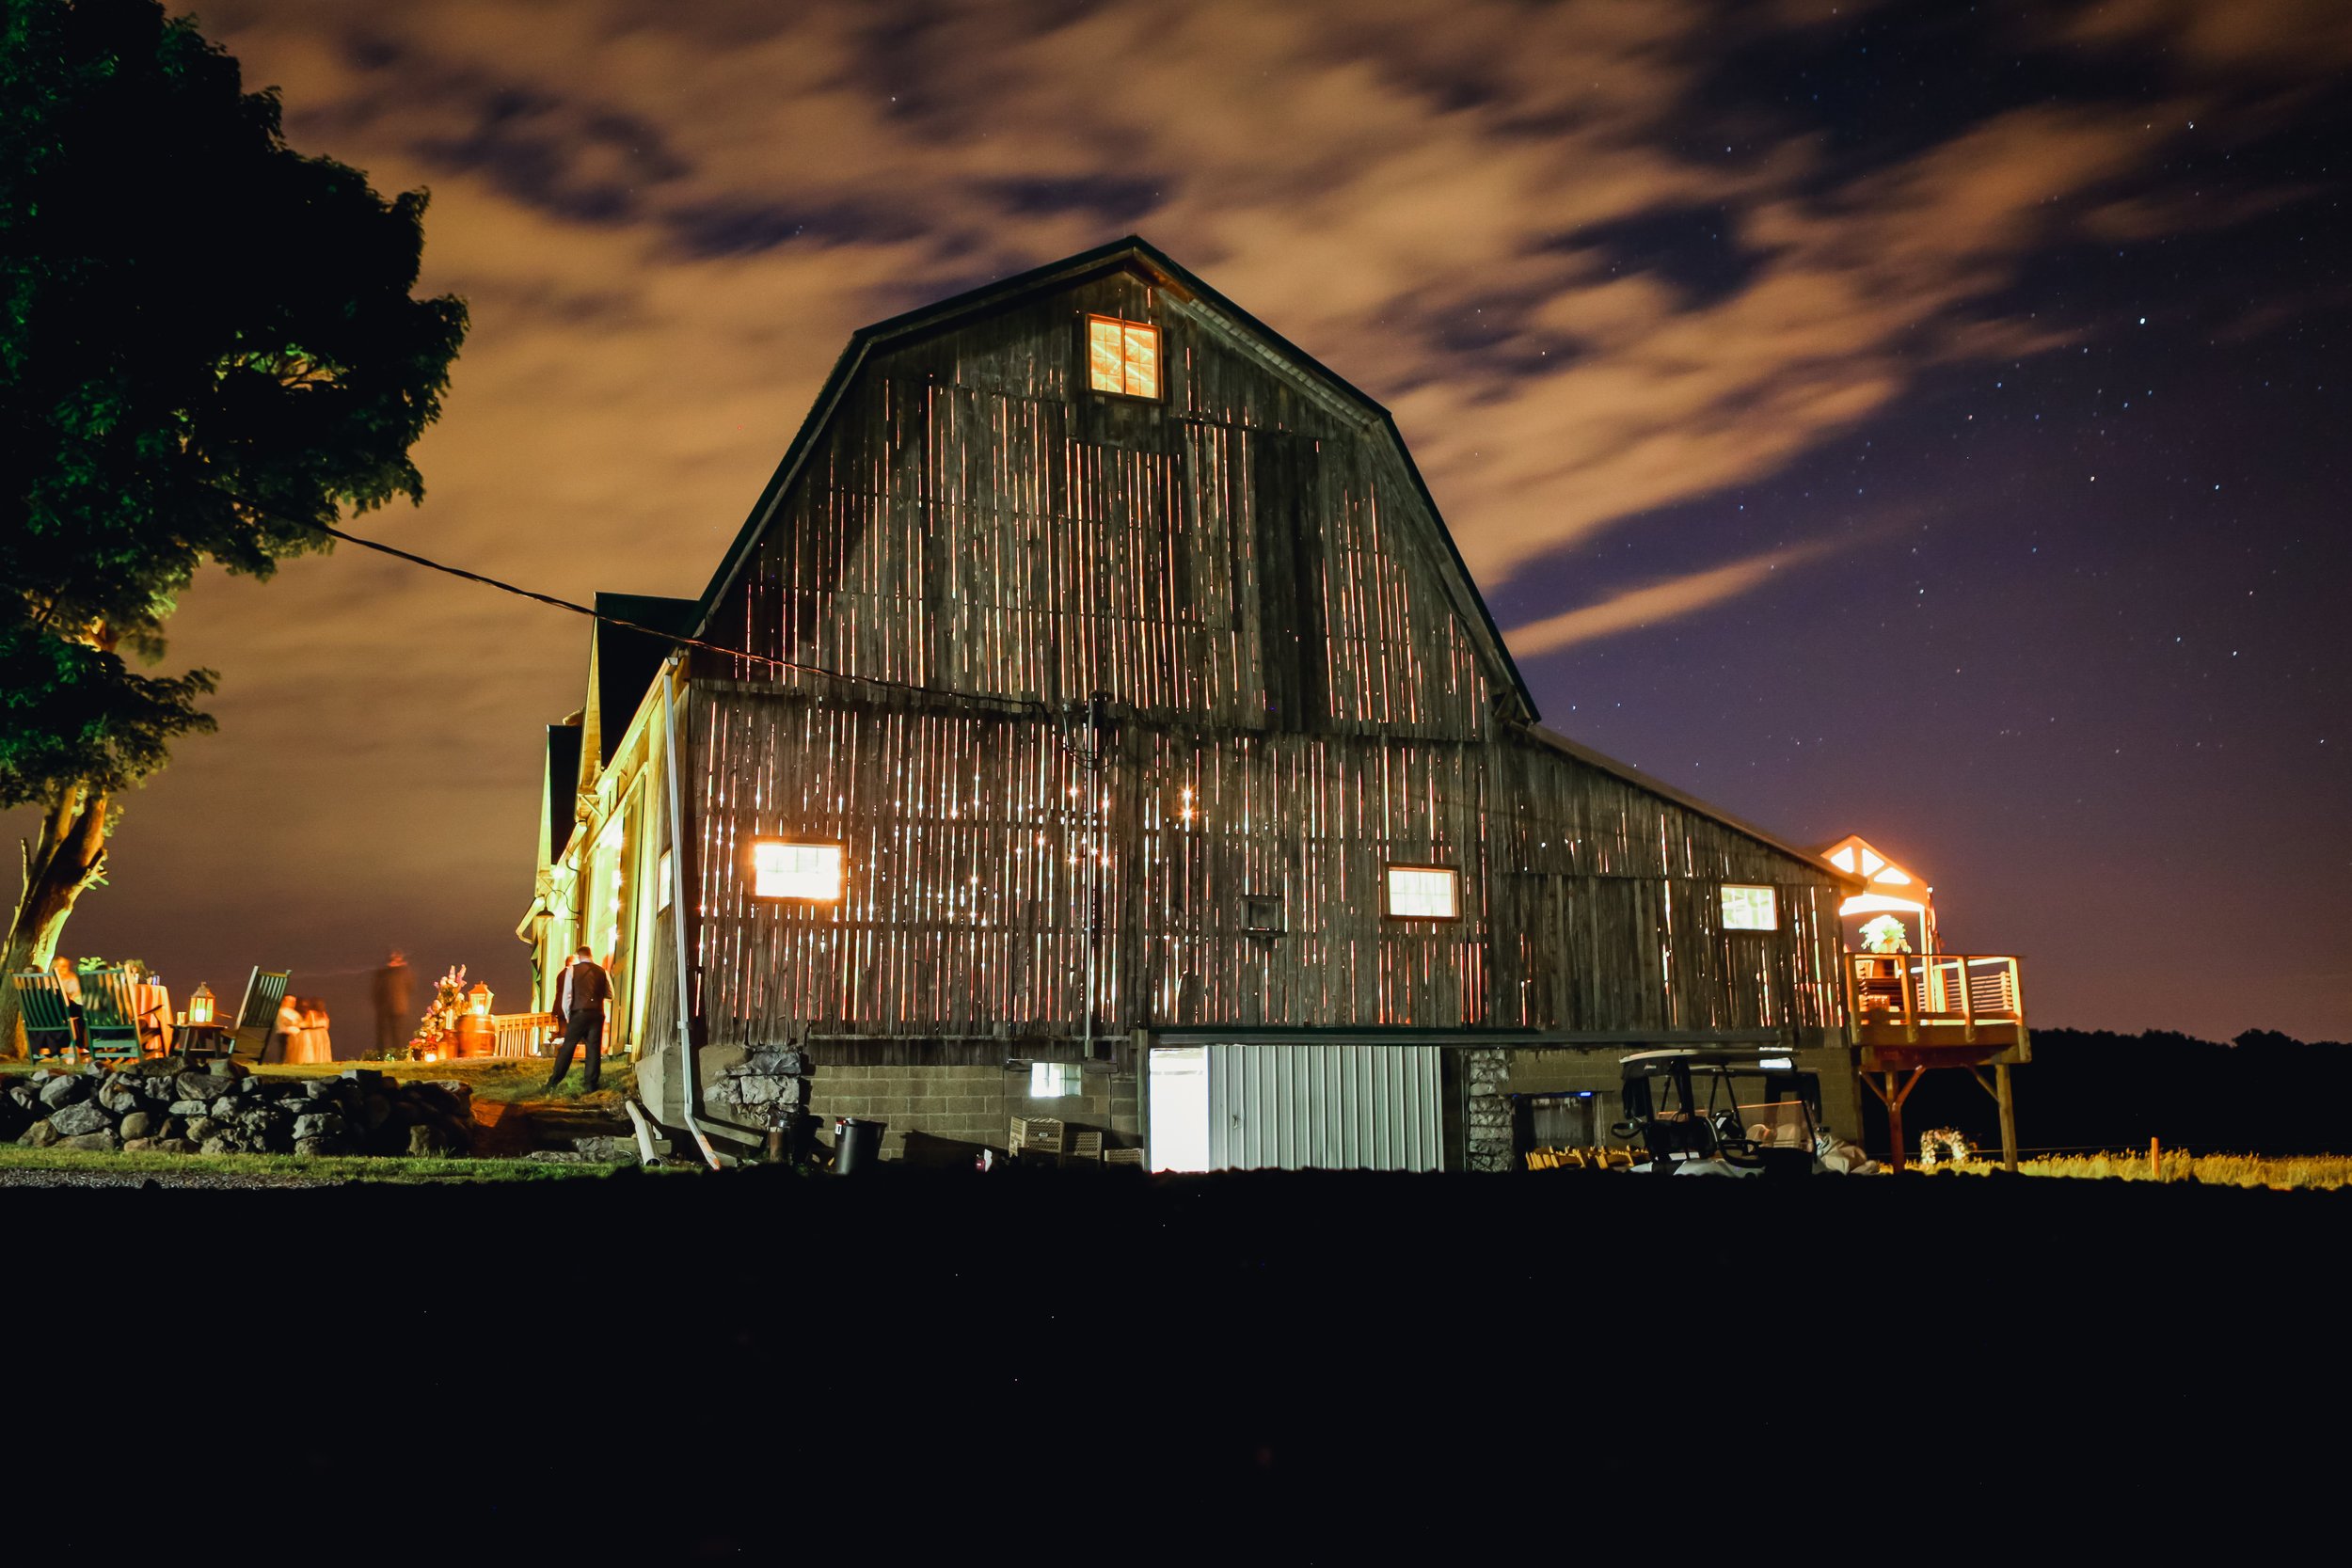 Nighttime Barn.jpg